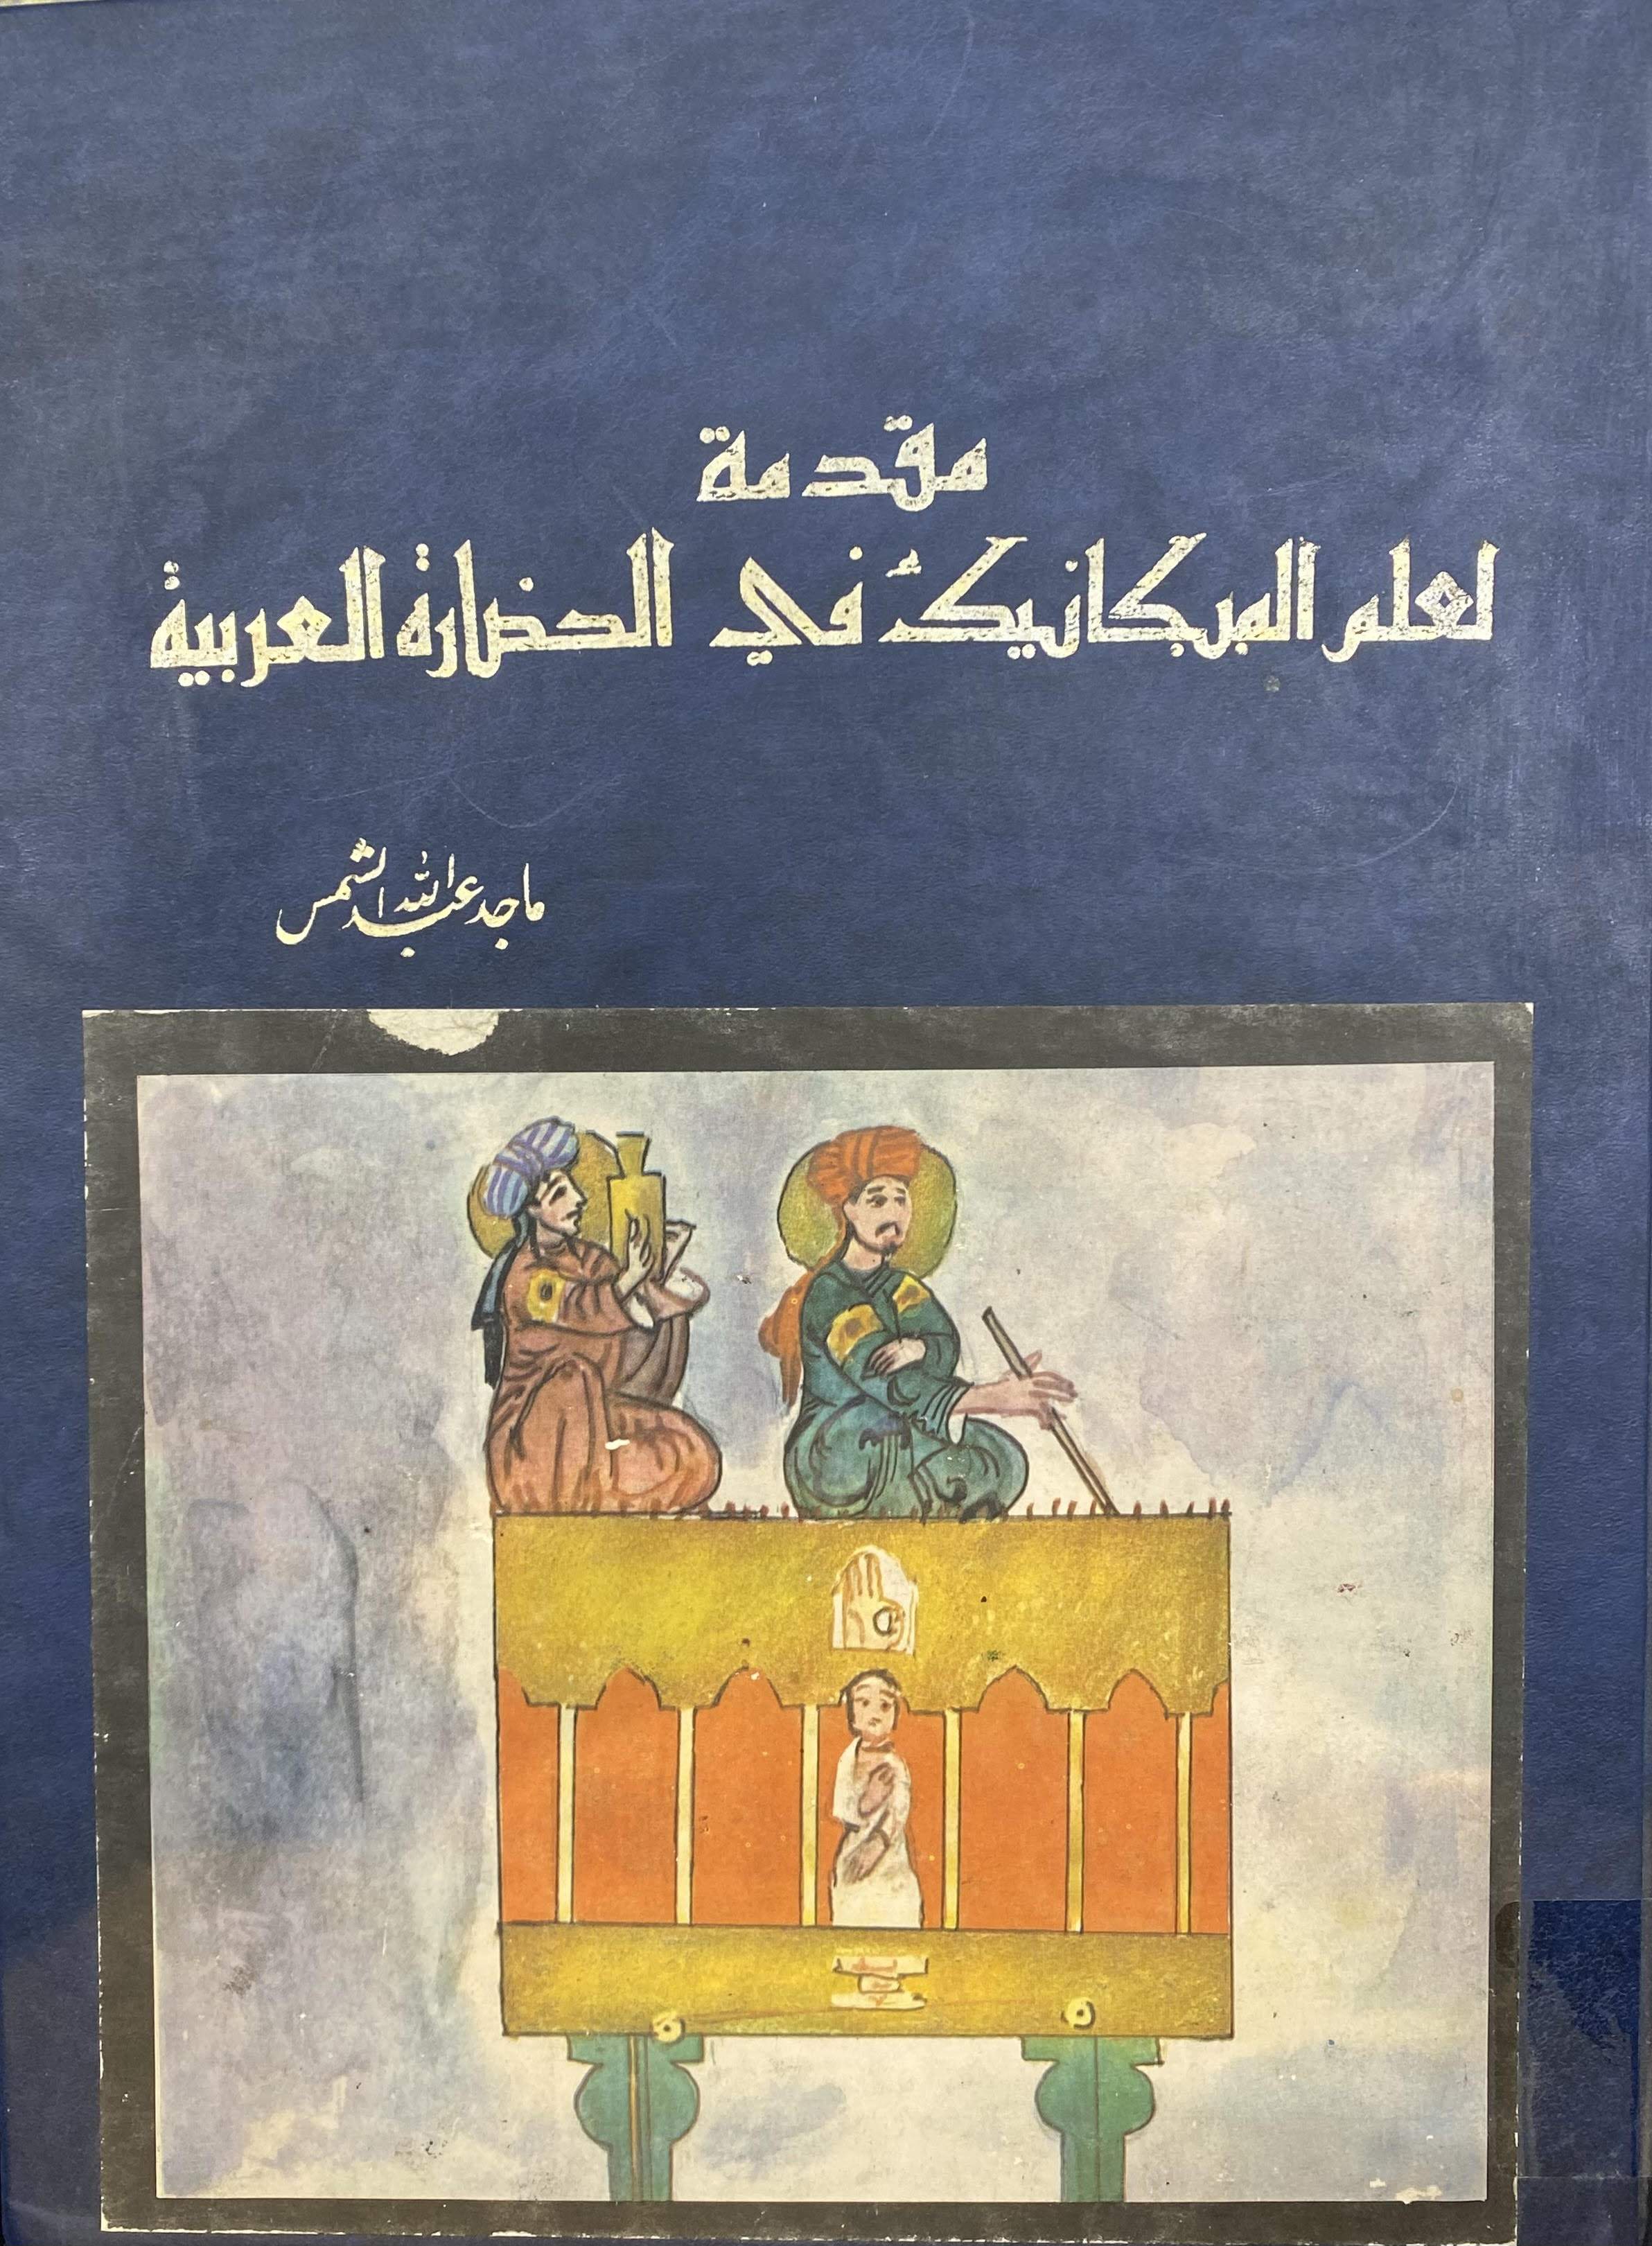 مقدمة لعلم الميكانيك في الحضارة العربية